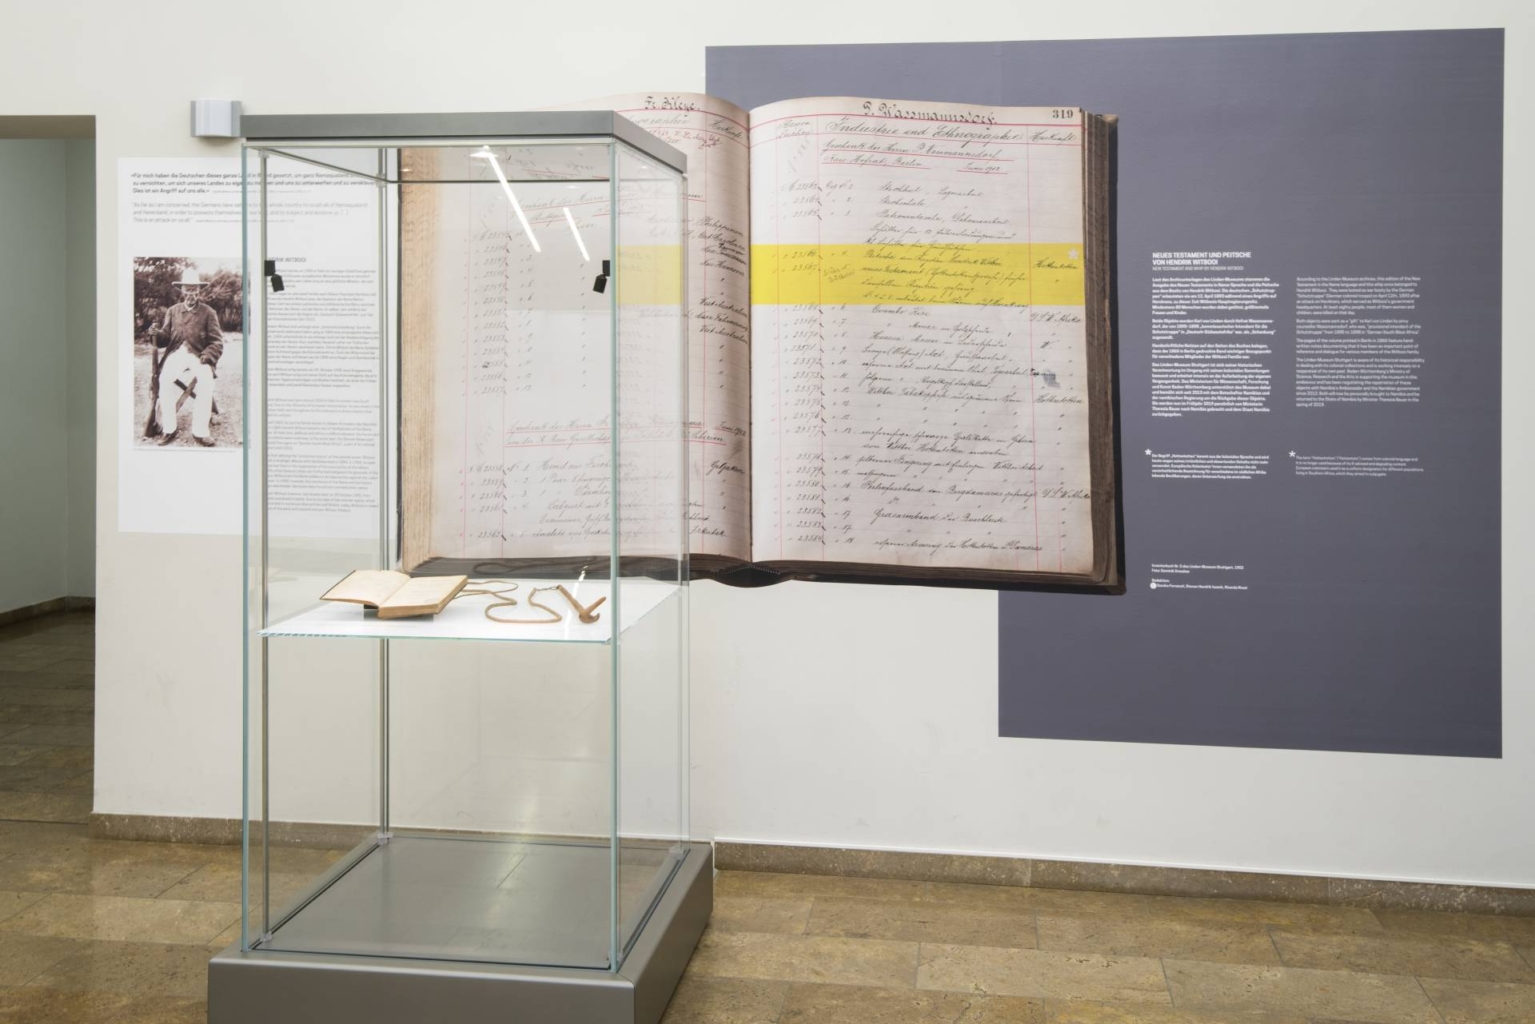 Ausstellungsansicht der Bibel und Peitsche von Hendrik Witbooi im Flur des Museums